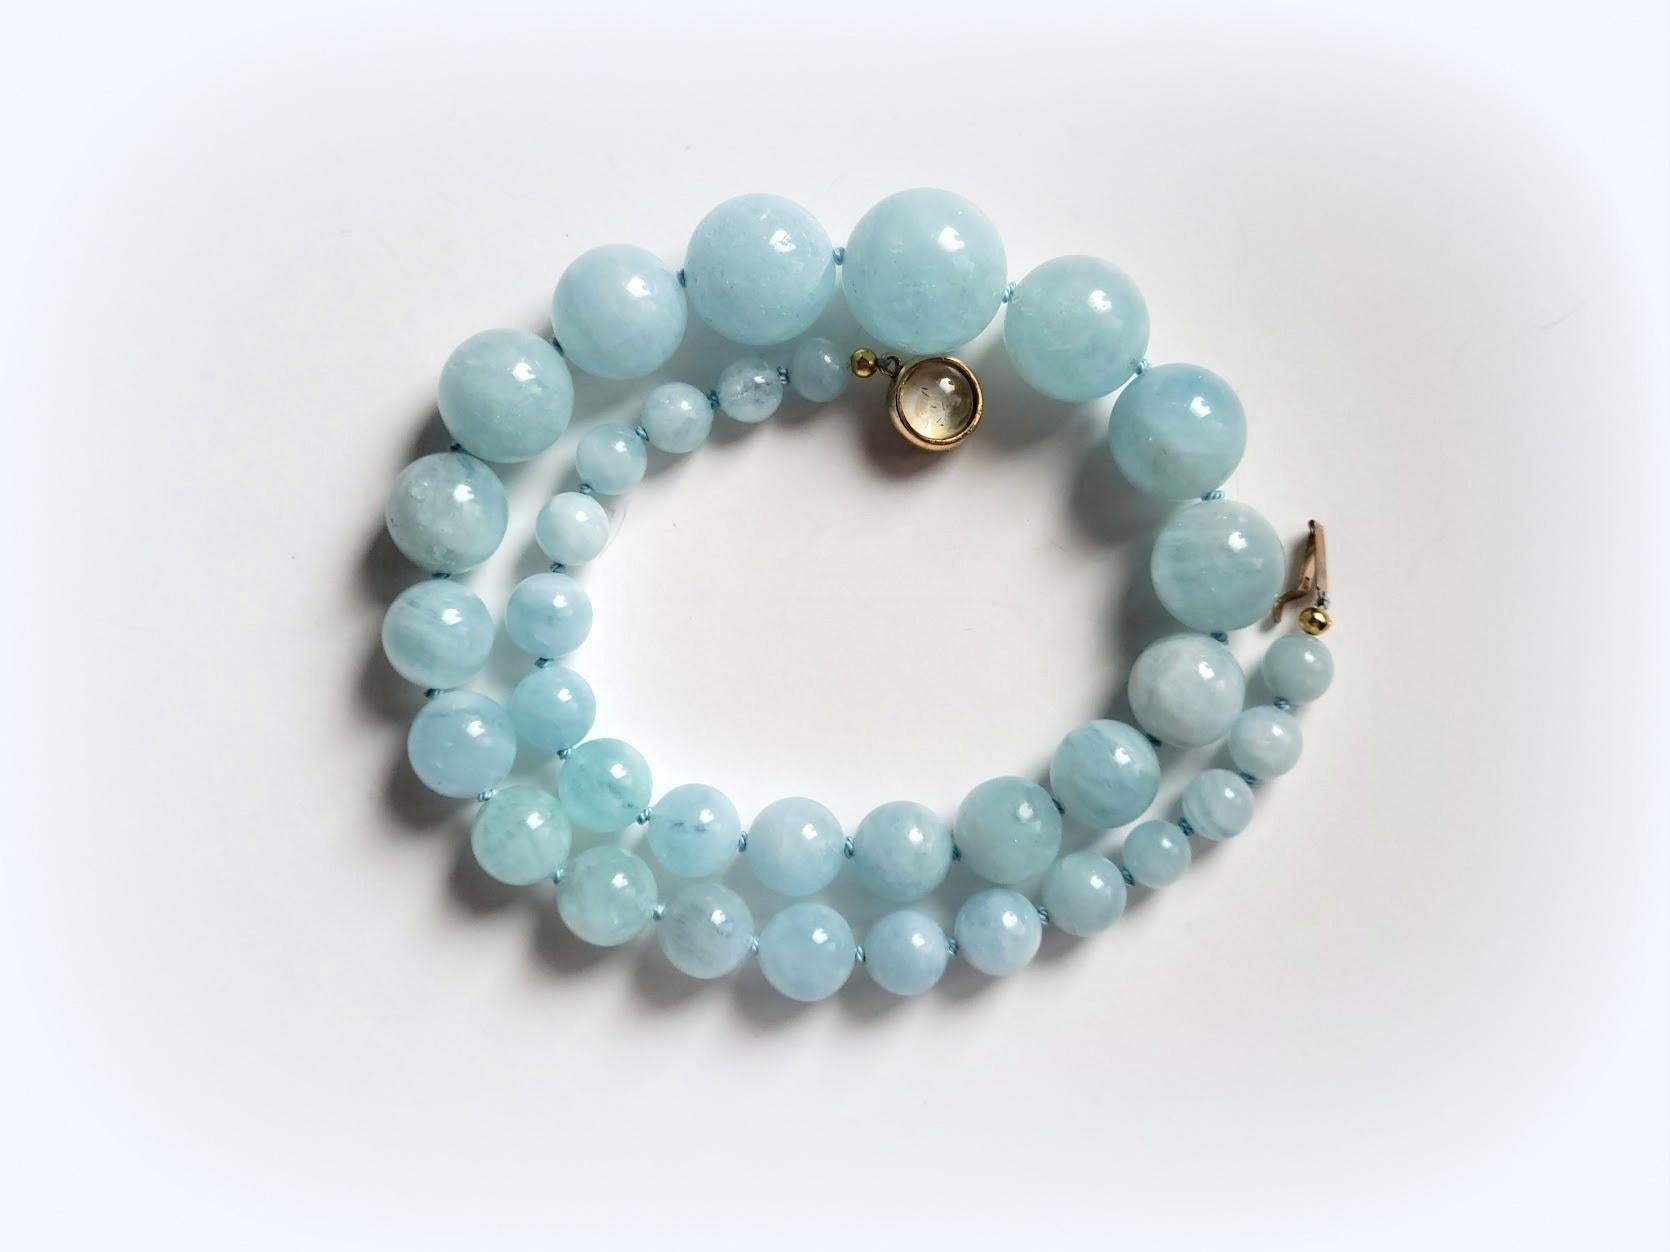 Die Länge der Halskette beträgt 18,5 Zoll (47 cm). 
Die Größe der glatten runden Perlen liegt zwischen 8 mm und 19 mm. 
Die Farbe der Perlen ist ein sanfter Farbton des blauen Himmels. Eine sehr sanfte, weiche Pastellfarbe! Wunderschöne